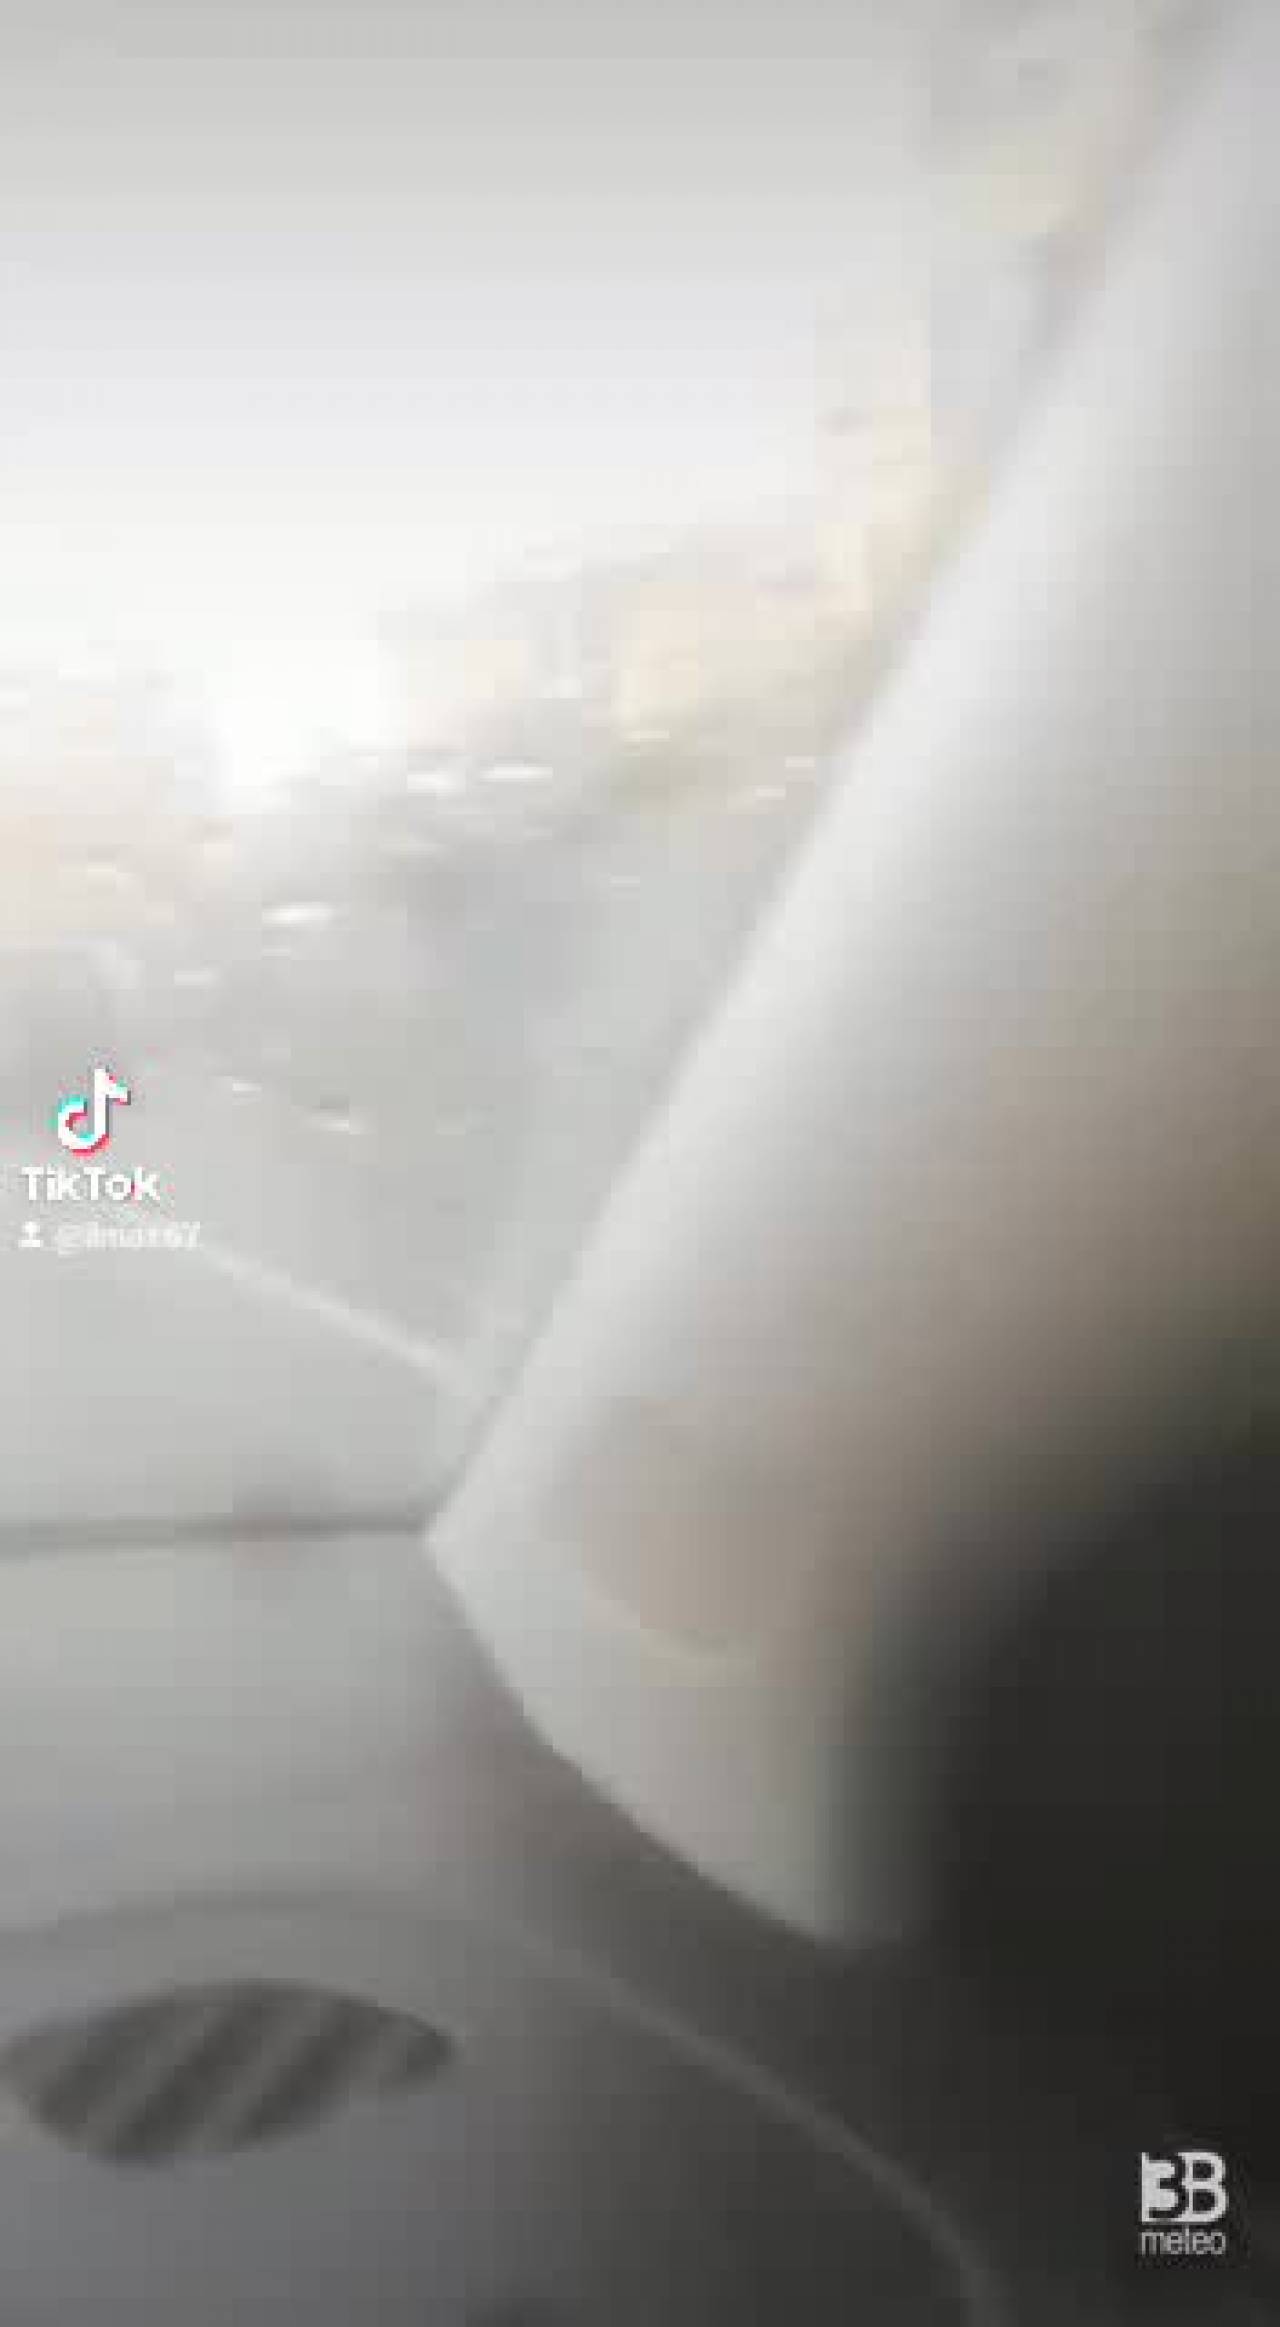 Cronaca meteo VIDEO, MALTEMPO GENOVA - Pioggia torrenziale a molassana